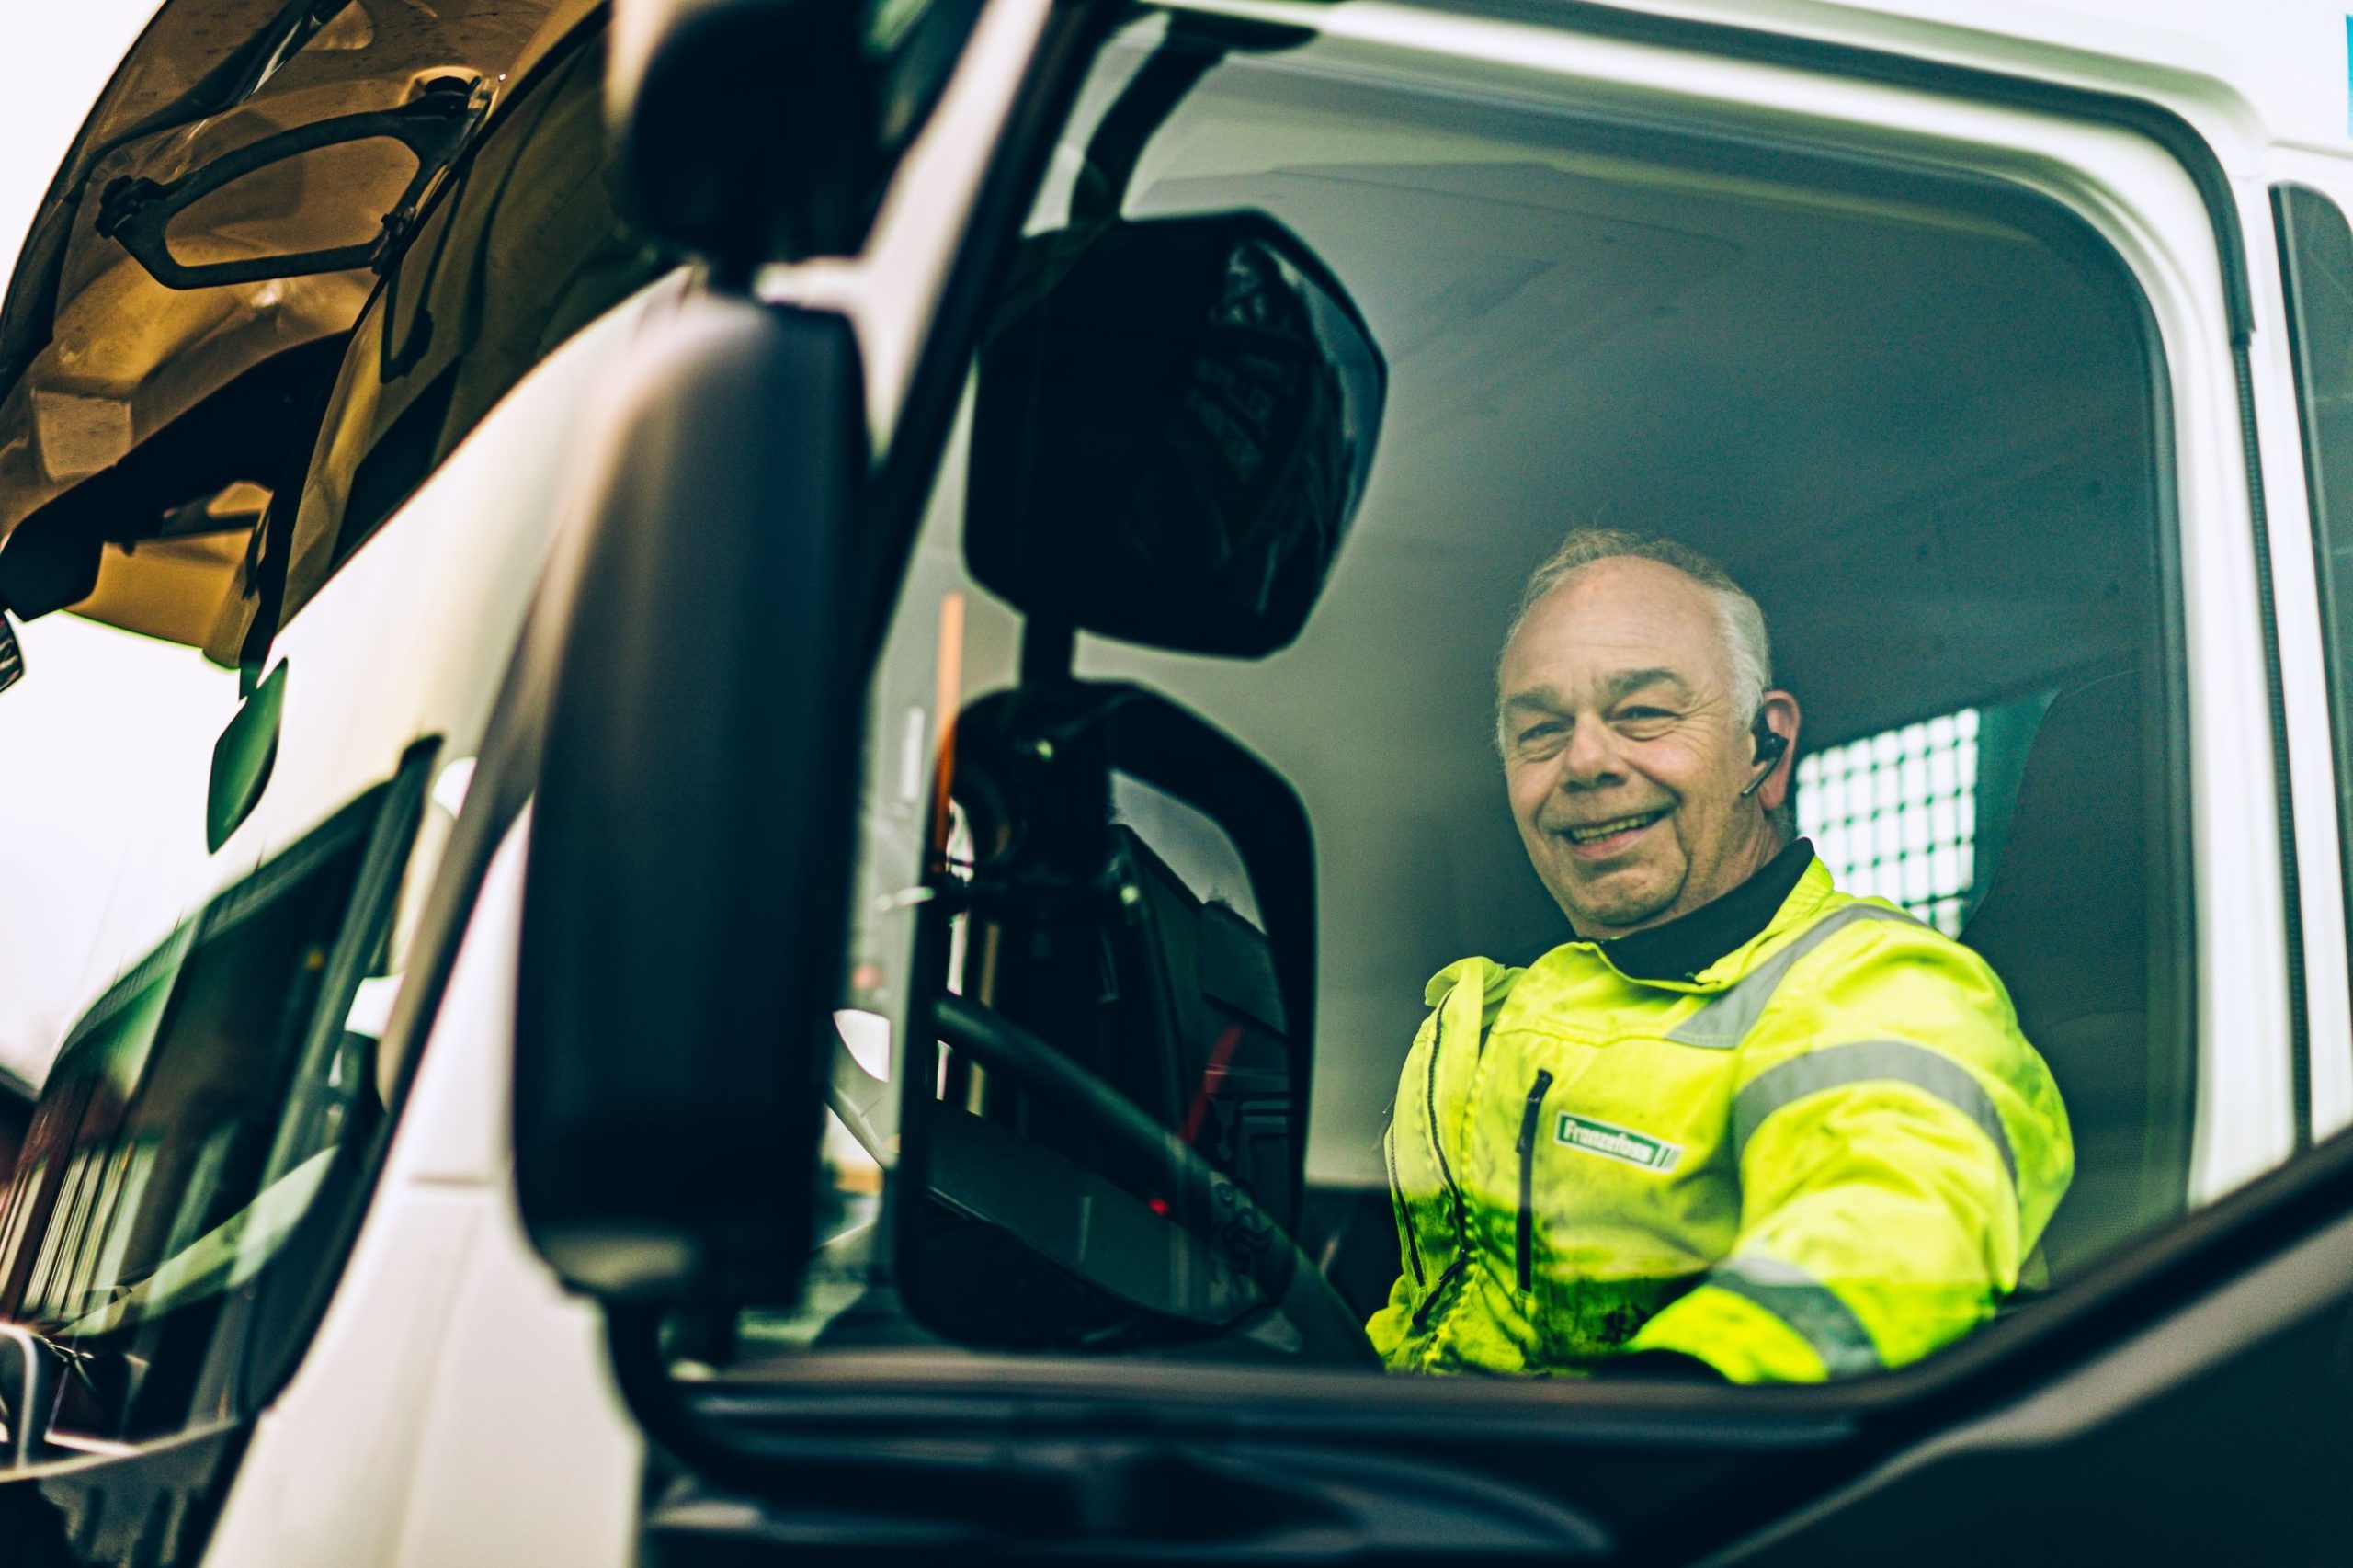 Sjåfør Frode Elnes i elektrisk lastebil - Franzefoss